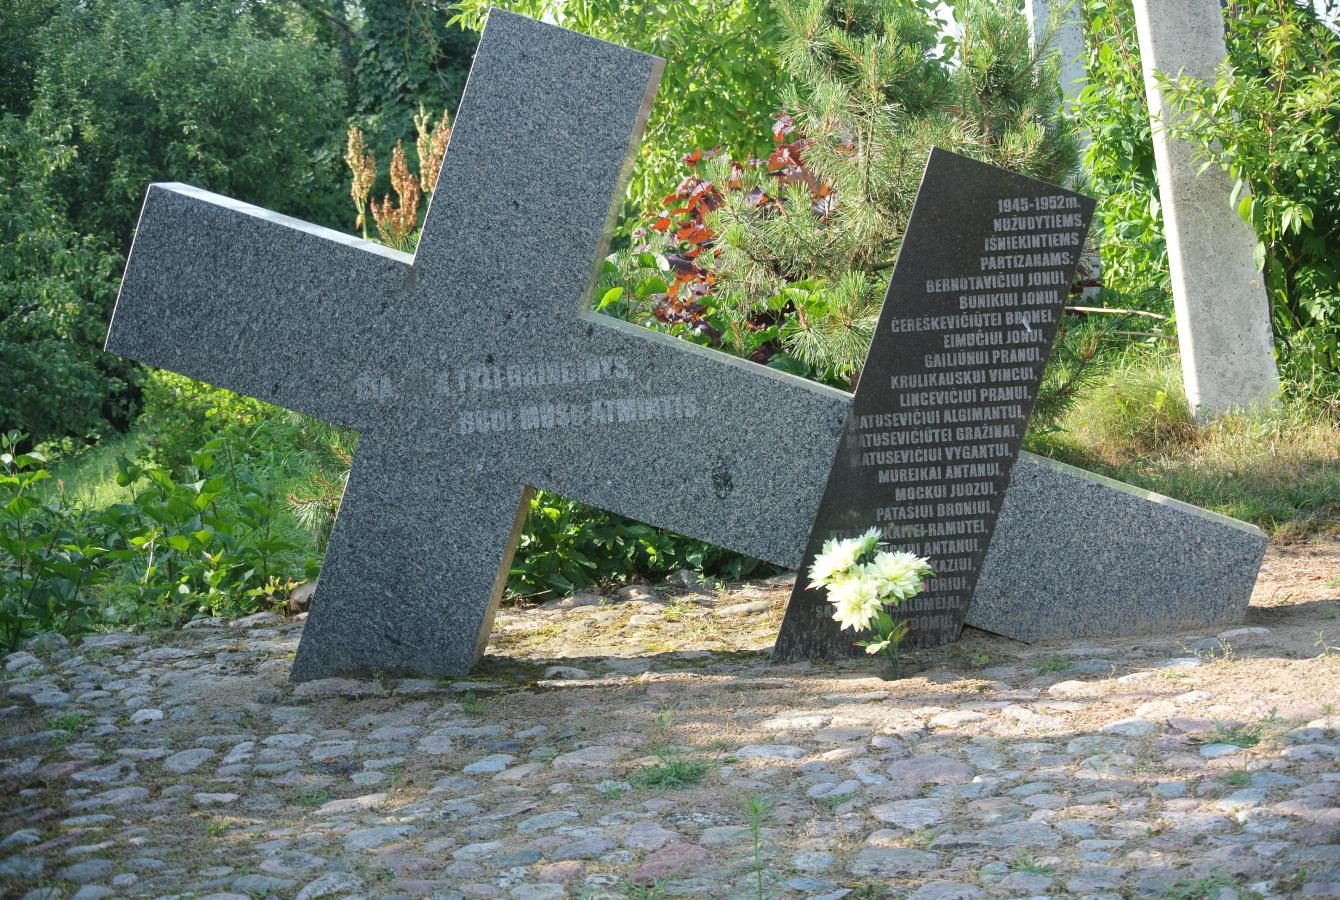 Sovietinė valdžia 1940–1941 m. ir 1944–1953 m. iš Kriūkų apylinkės ištrėmė 260 žmonių. Nacių okupacinės administracijos įsakymu 1941 m. nužudyta apie 80 miestelio žydų. Vyrai sušaudyti prie Šakių, moterys ir vaikai – prie Zapyškio.